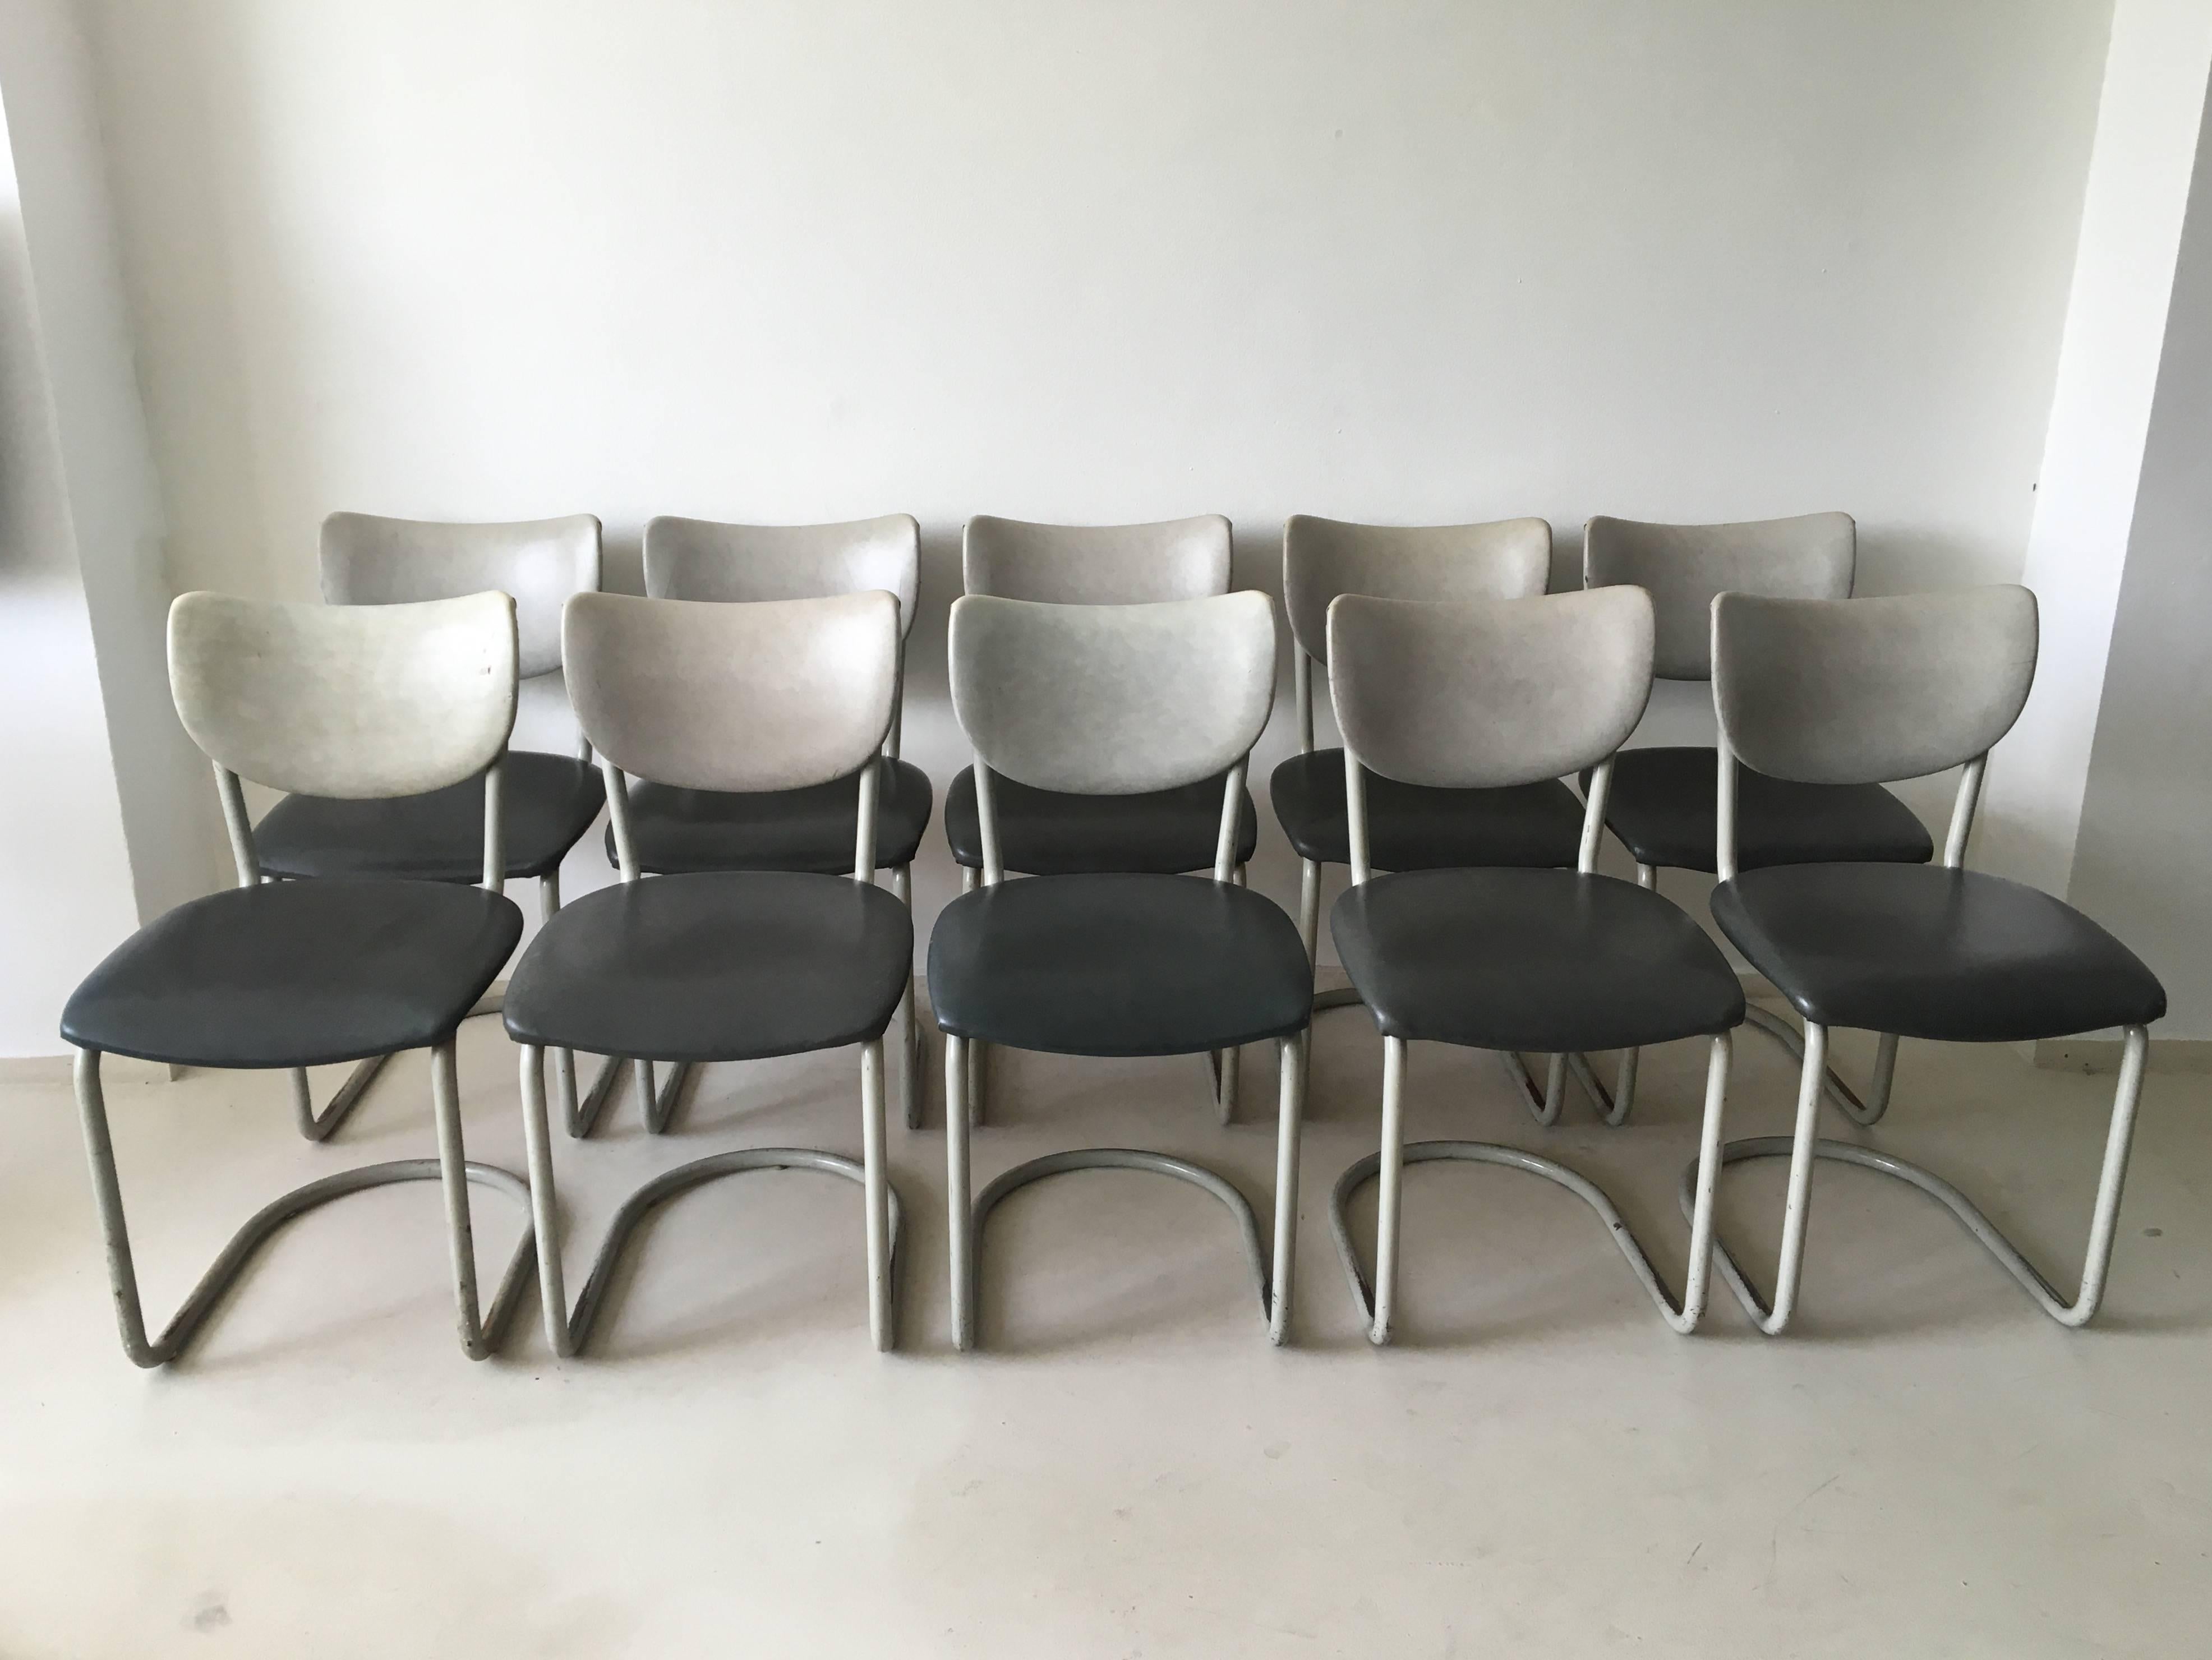 Diese (Ess-)Stühle wurden in den 1950er Jahren von De Wit, Schiedam, entworfen. Die Stühle bestehen aus einem polierten und beschichteten Metallgestell. Die Polsterung ist aus grauem und anthrazitfarbenem Kunstleder. Sie haben einen Industrial-Look